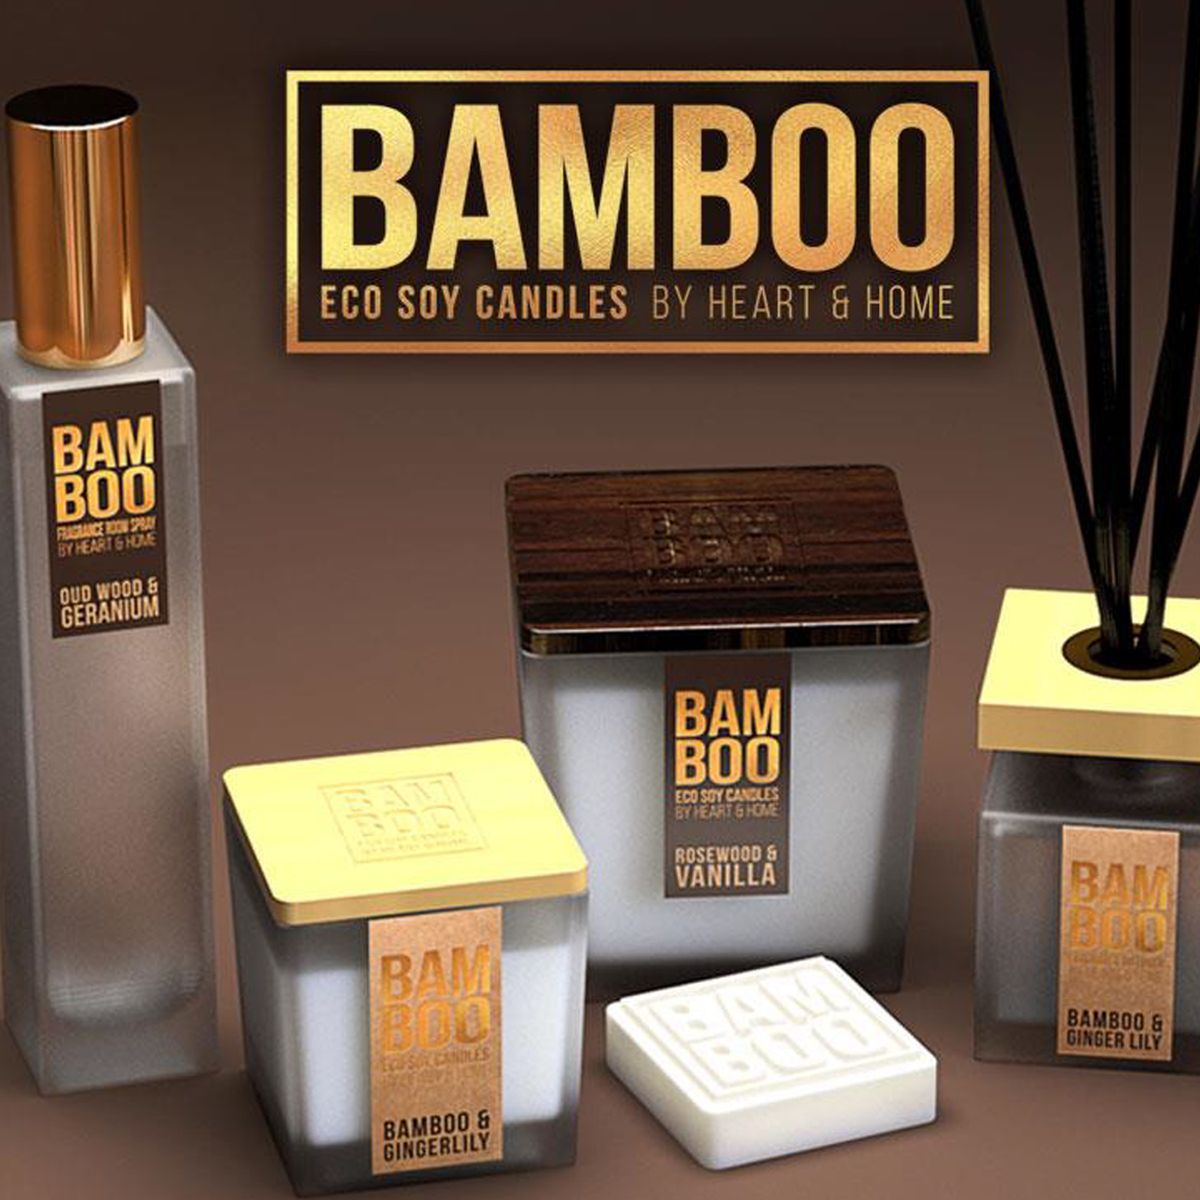 Bamboo Bougie petit modèle 90g Bois de oud et géranium Bamboo by Heart & Home 